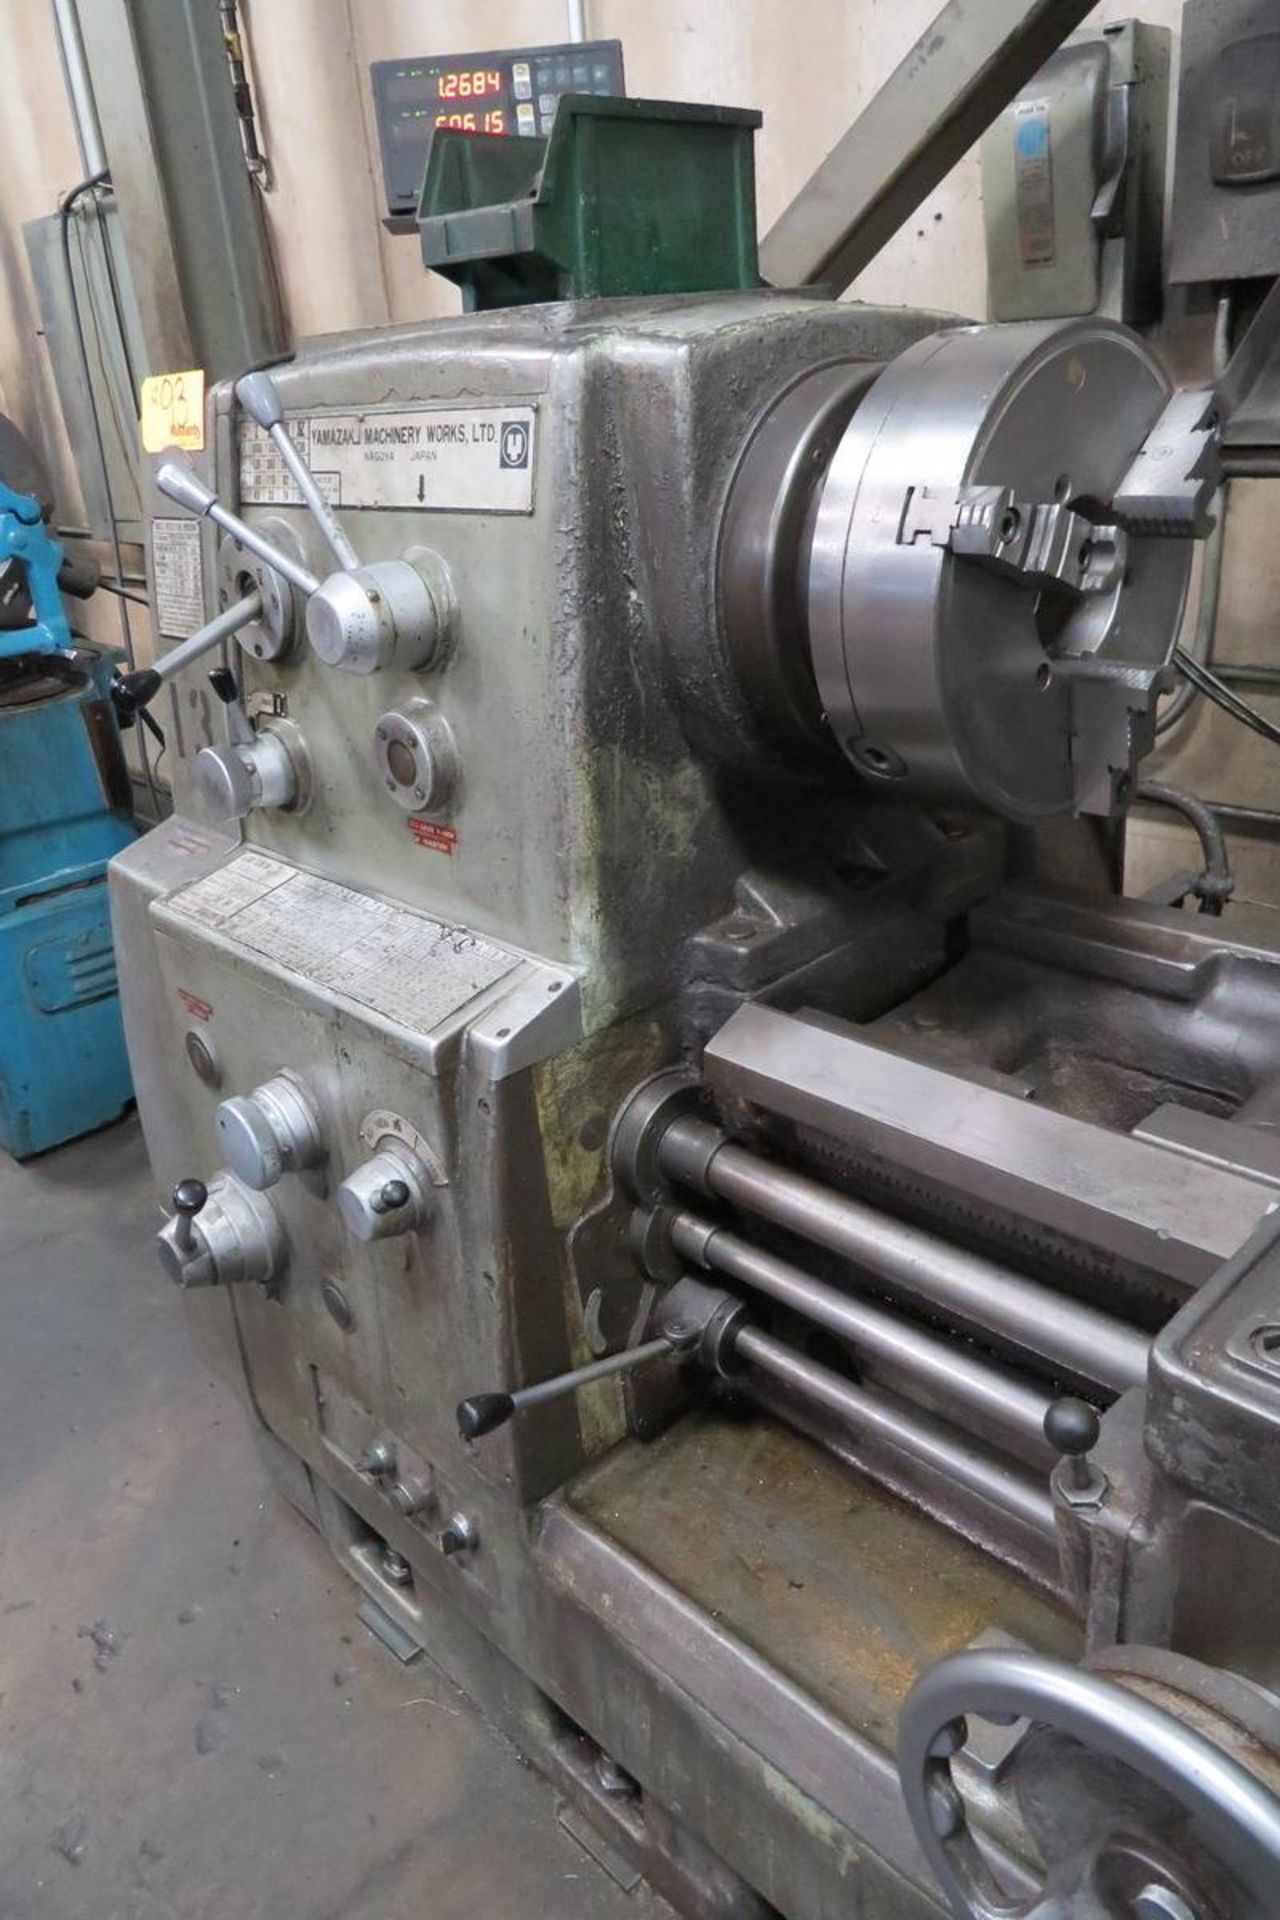 Yamazaki Machinery Mark II Engine Lathe (20" x 80") - Image 3 of 11